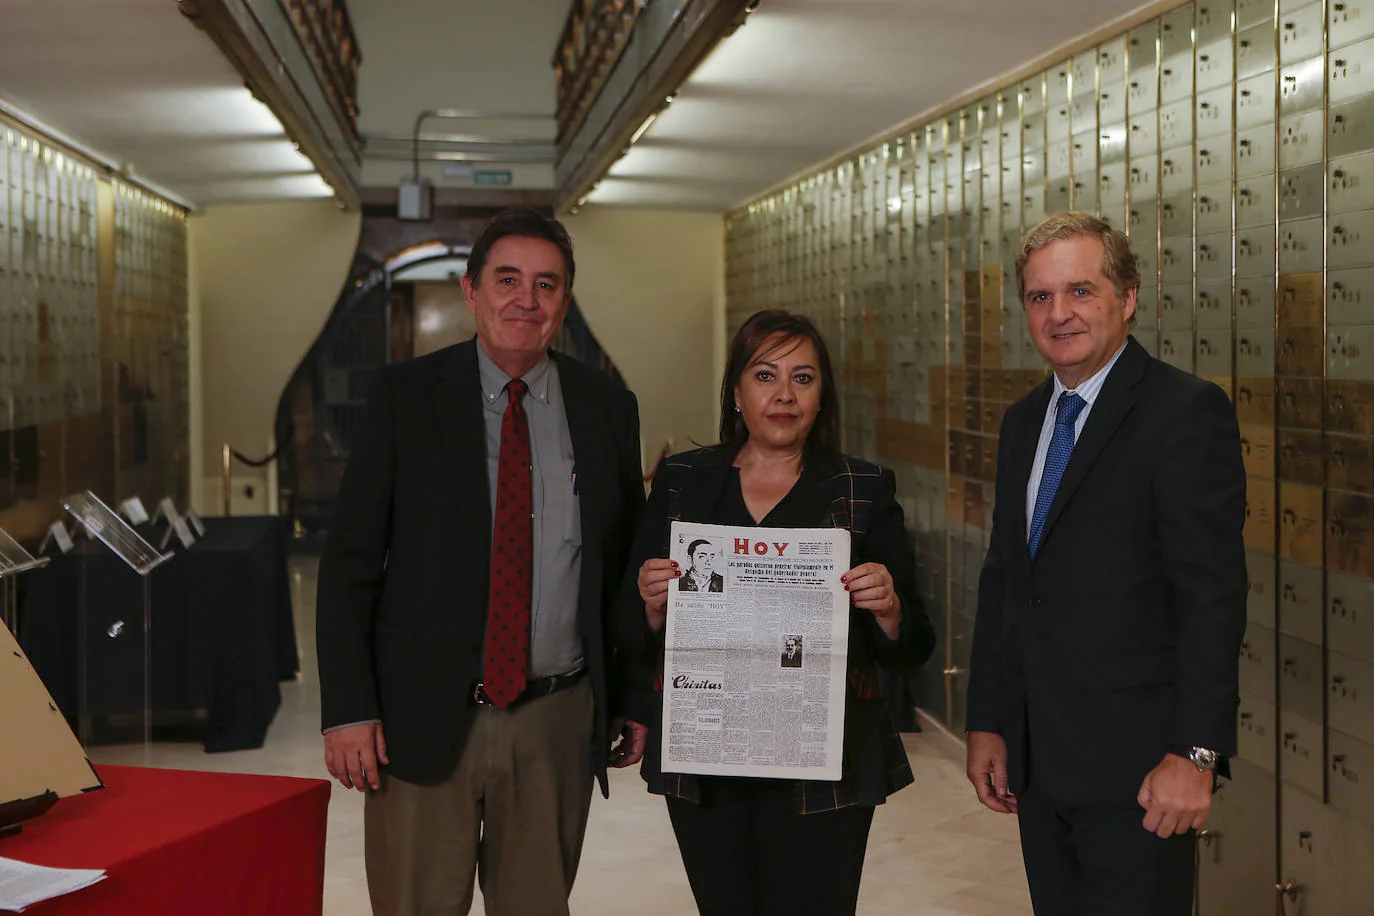 En el centro, Mar Domínguez, directora del Hoy, entre Luis García Montero, director del Instituto Cervantes e Ignacio Ybarra, presidente de Vocento.